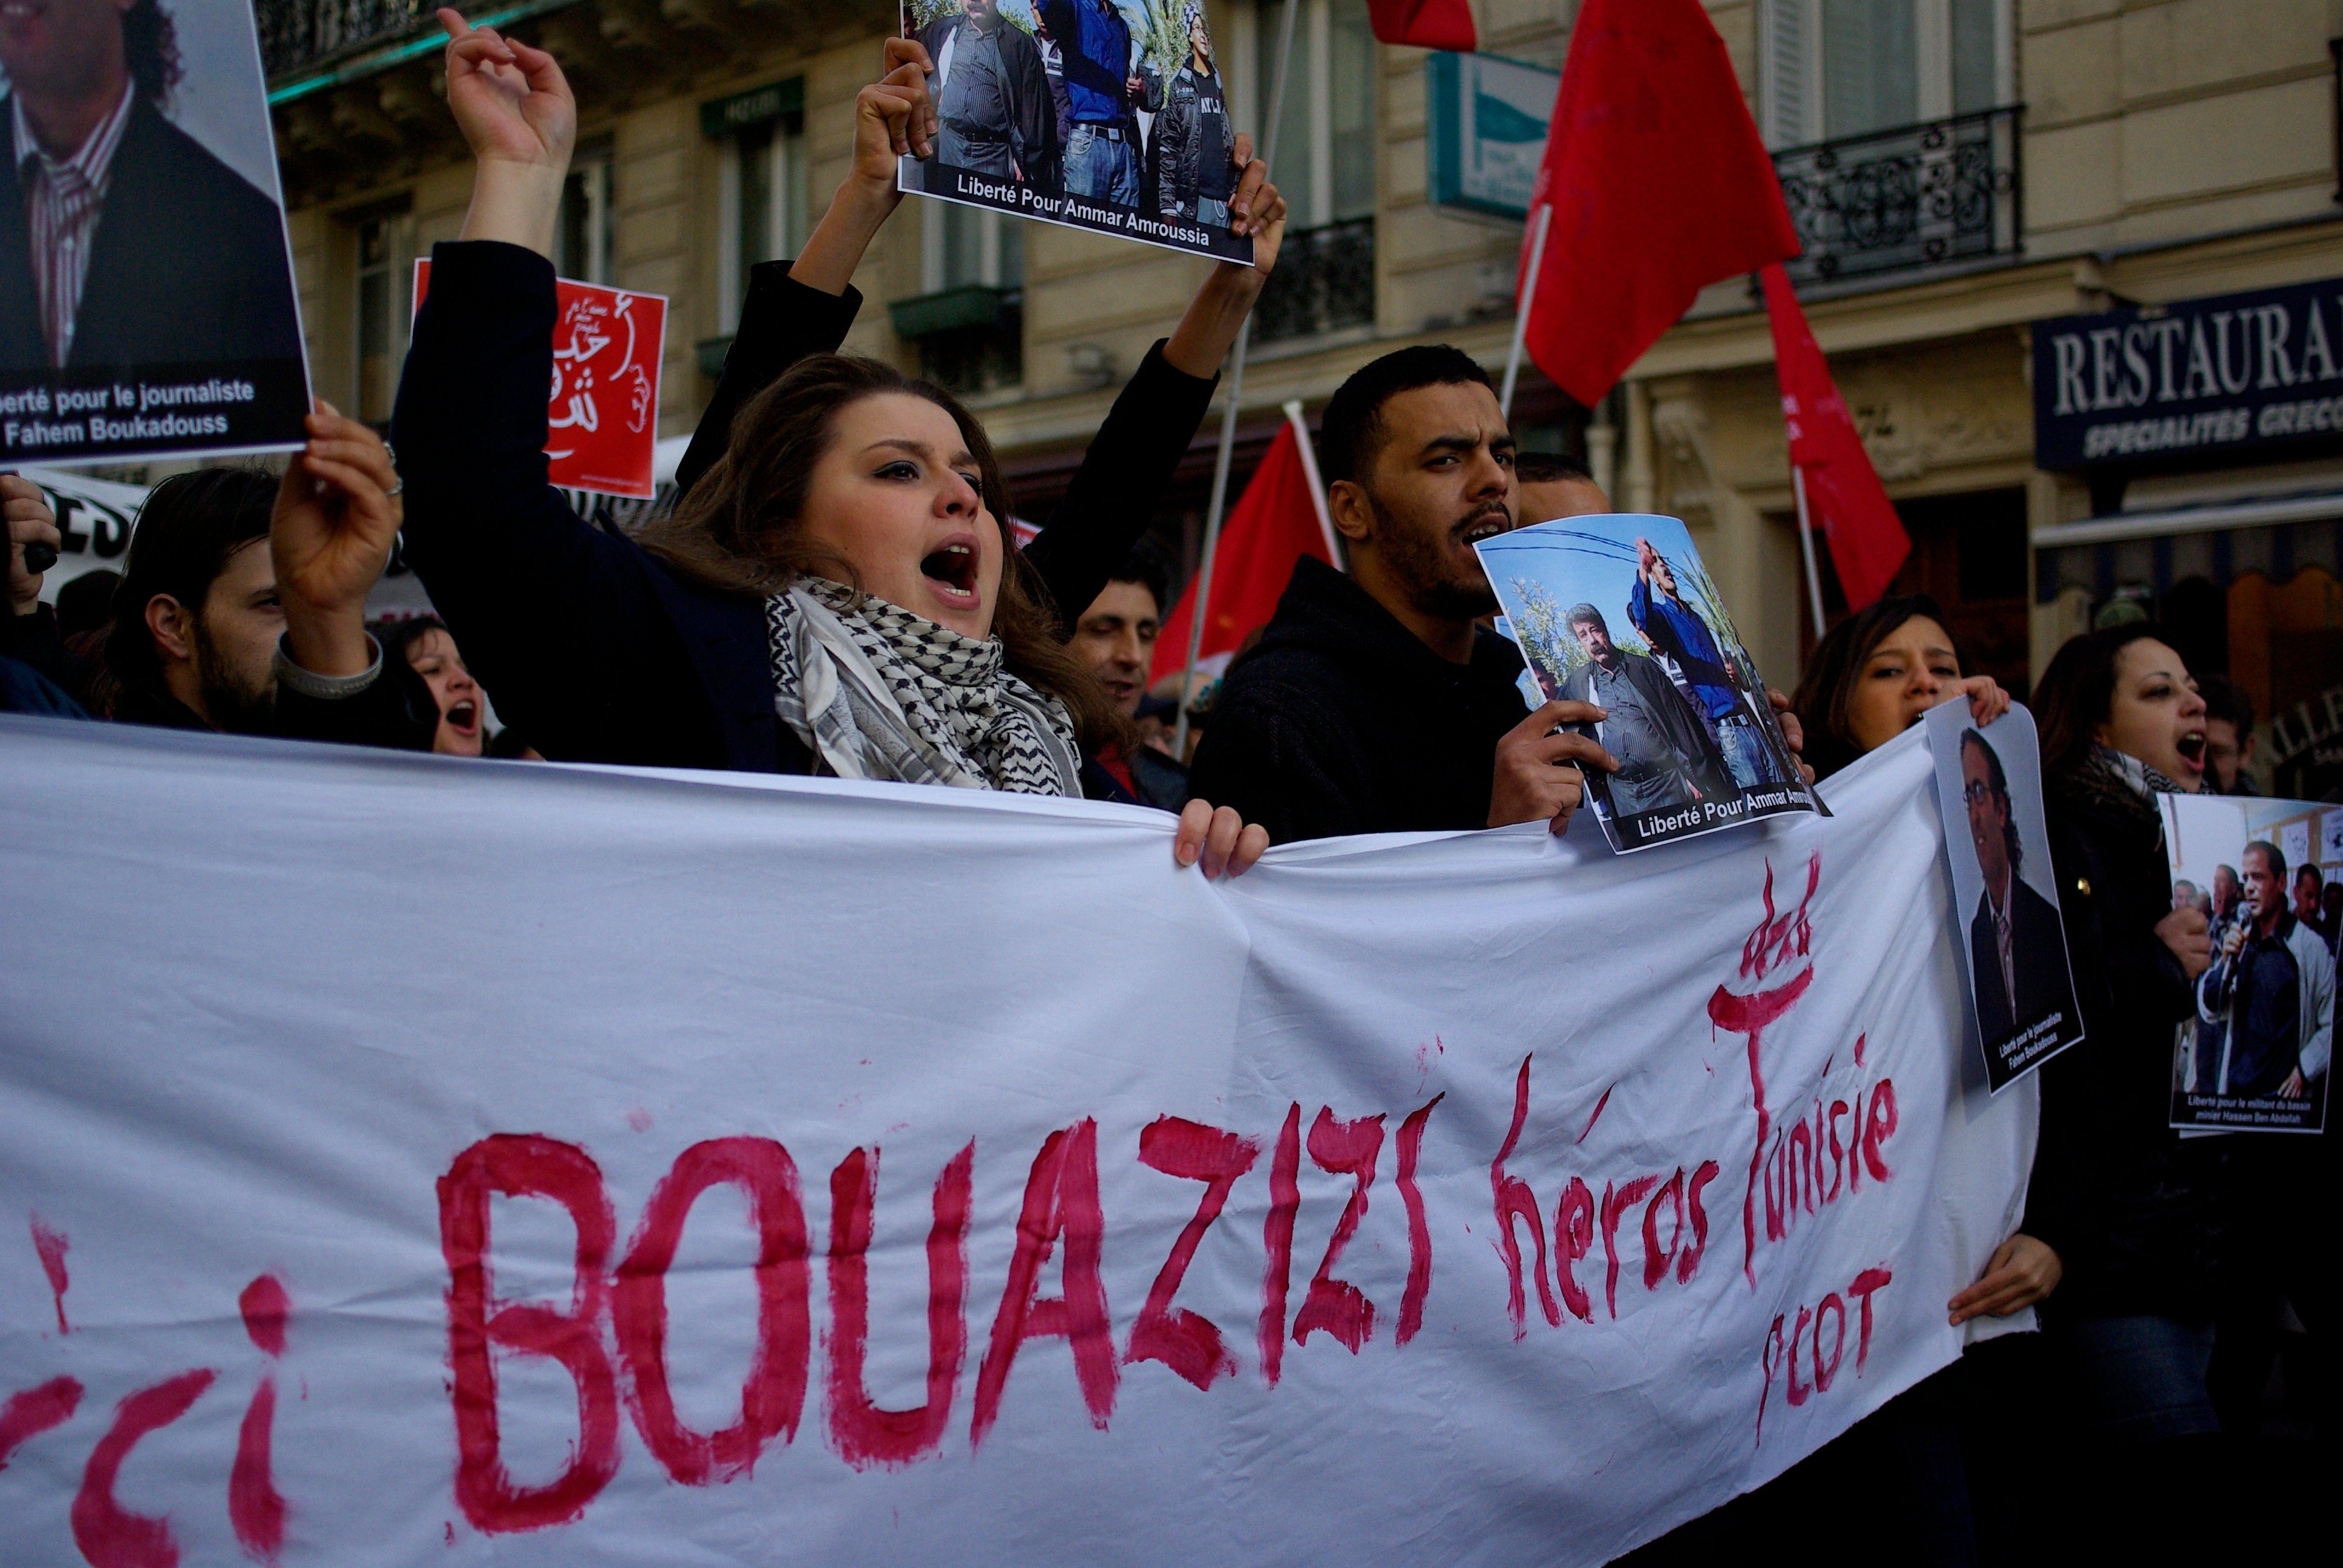 French support Bouazizi  / Wikipedia